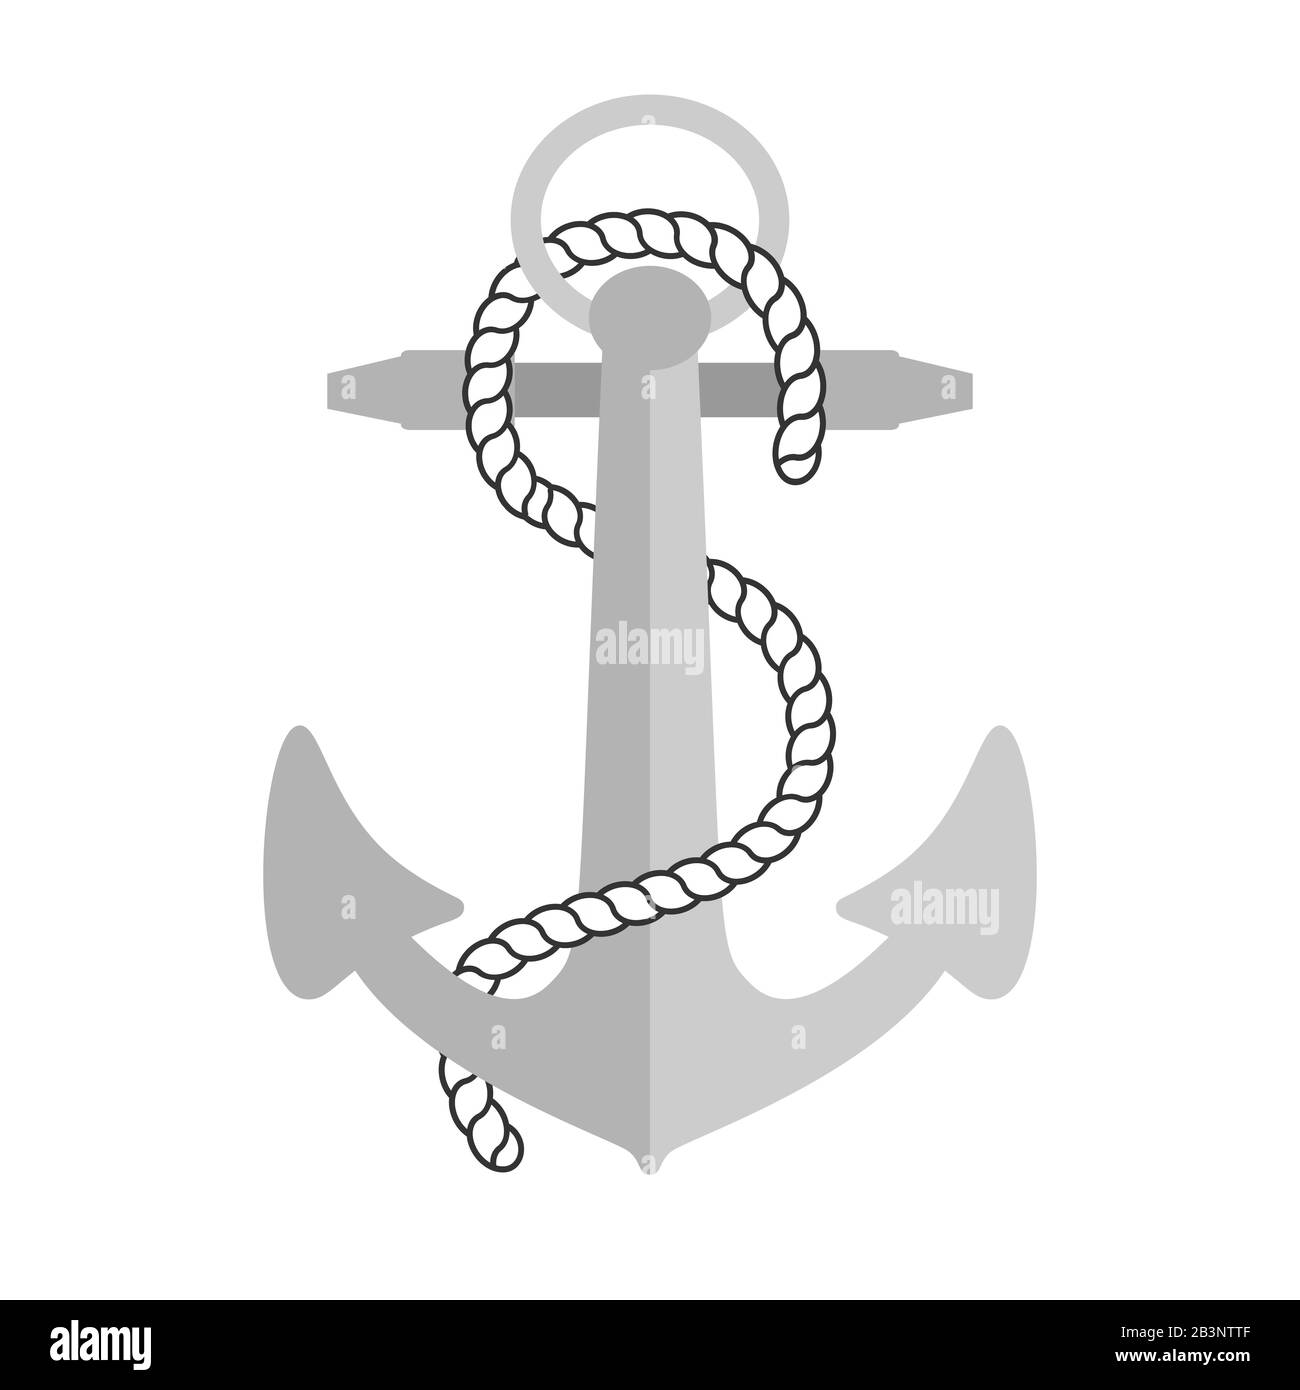 Illustrazione vettoriale dell'ancora nautica. Simbolo di marinai, vela, crociera e mare. Design da viaggio. Icona ed elemento di disegno. Illustrazione Vettoriale